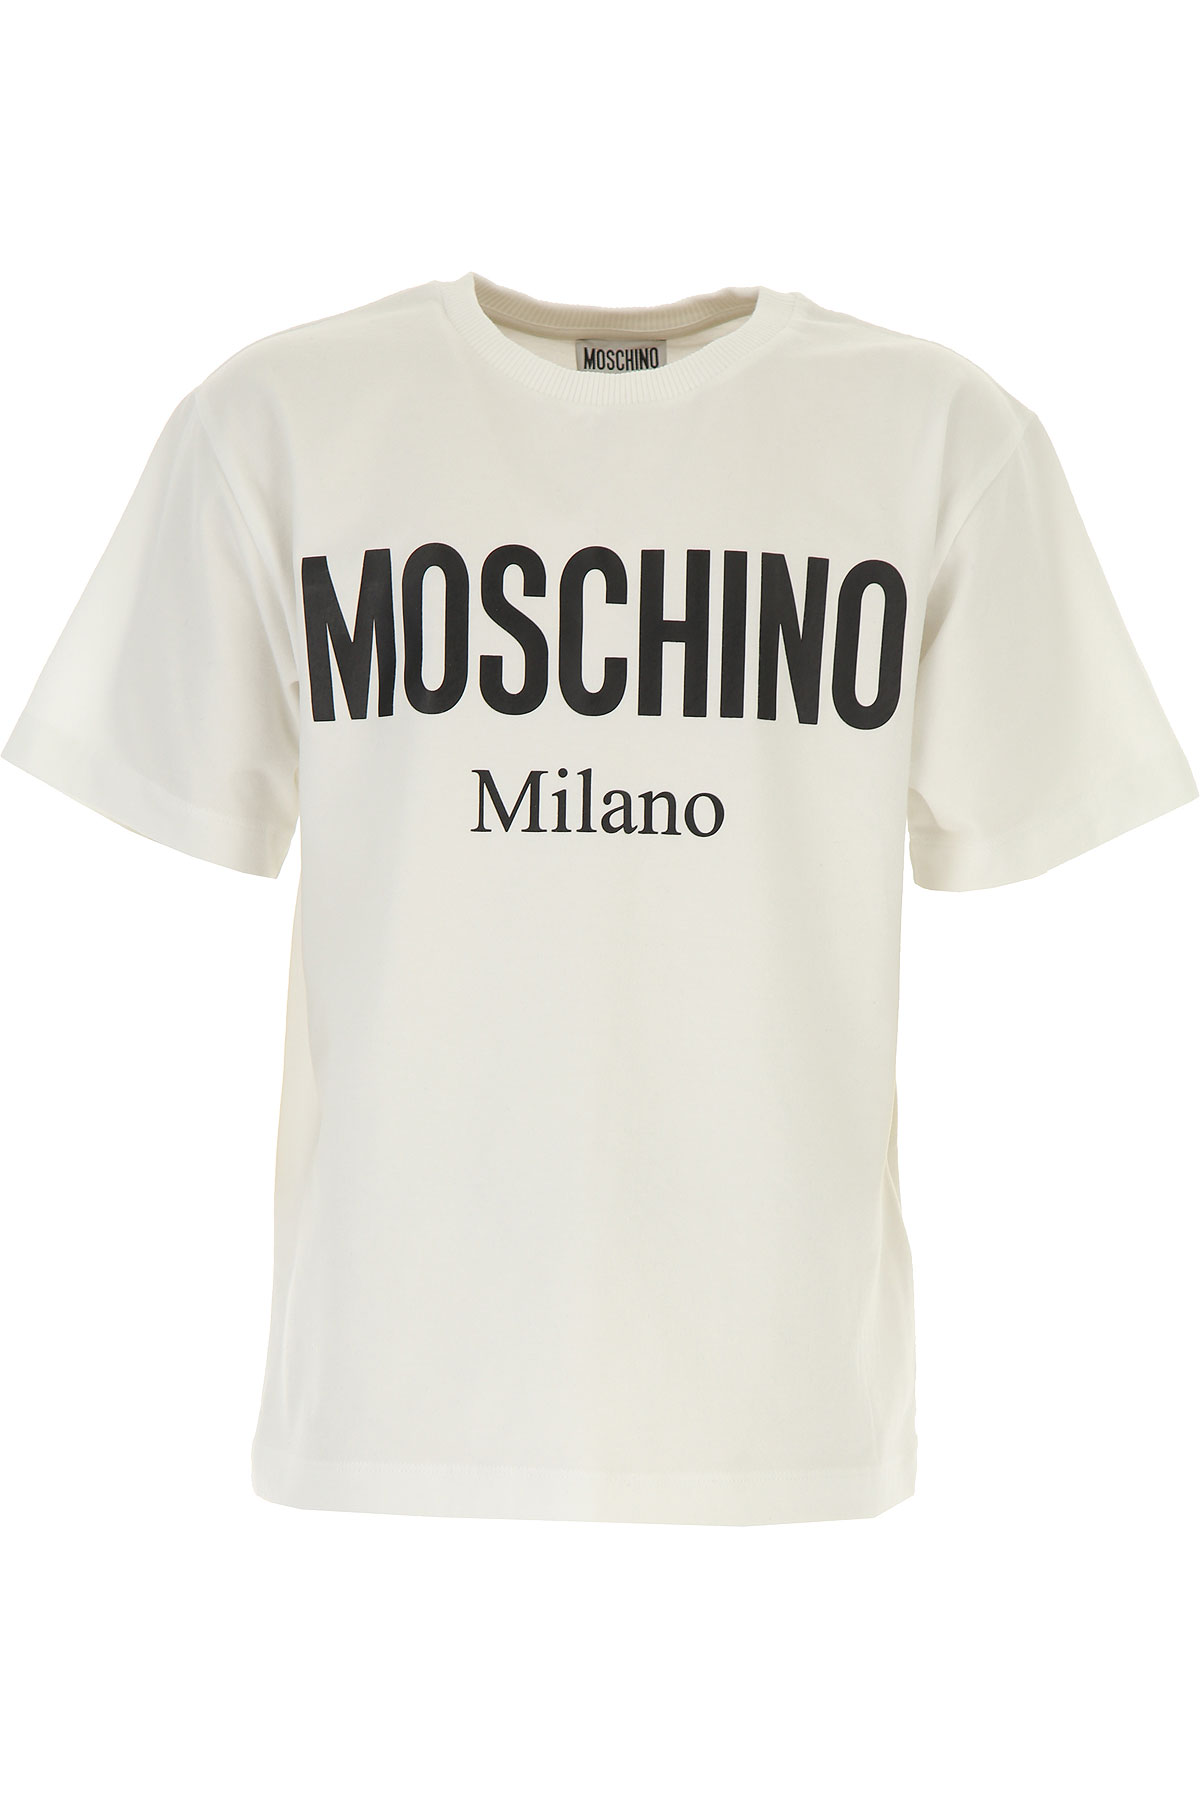 Moschino Kinder T-Shirt für Jungen Günstig im Sale, Weiss, Baumwolle, 2017, 10Y 4Y 8Y